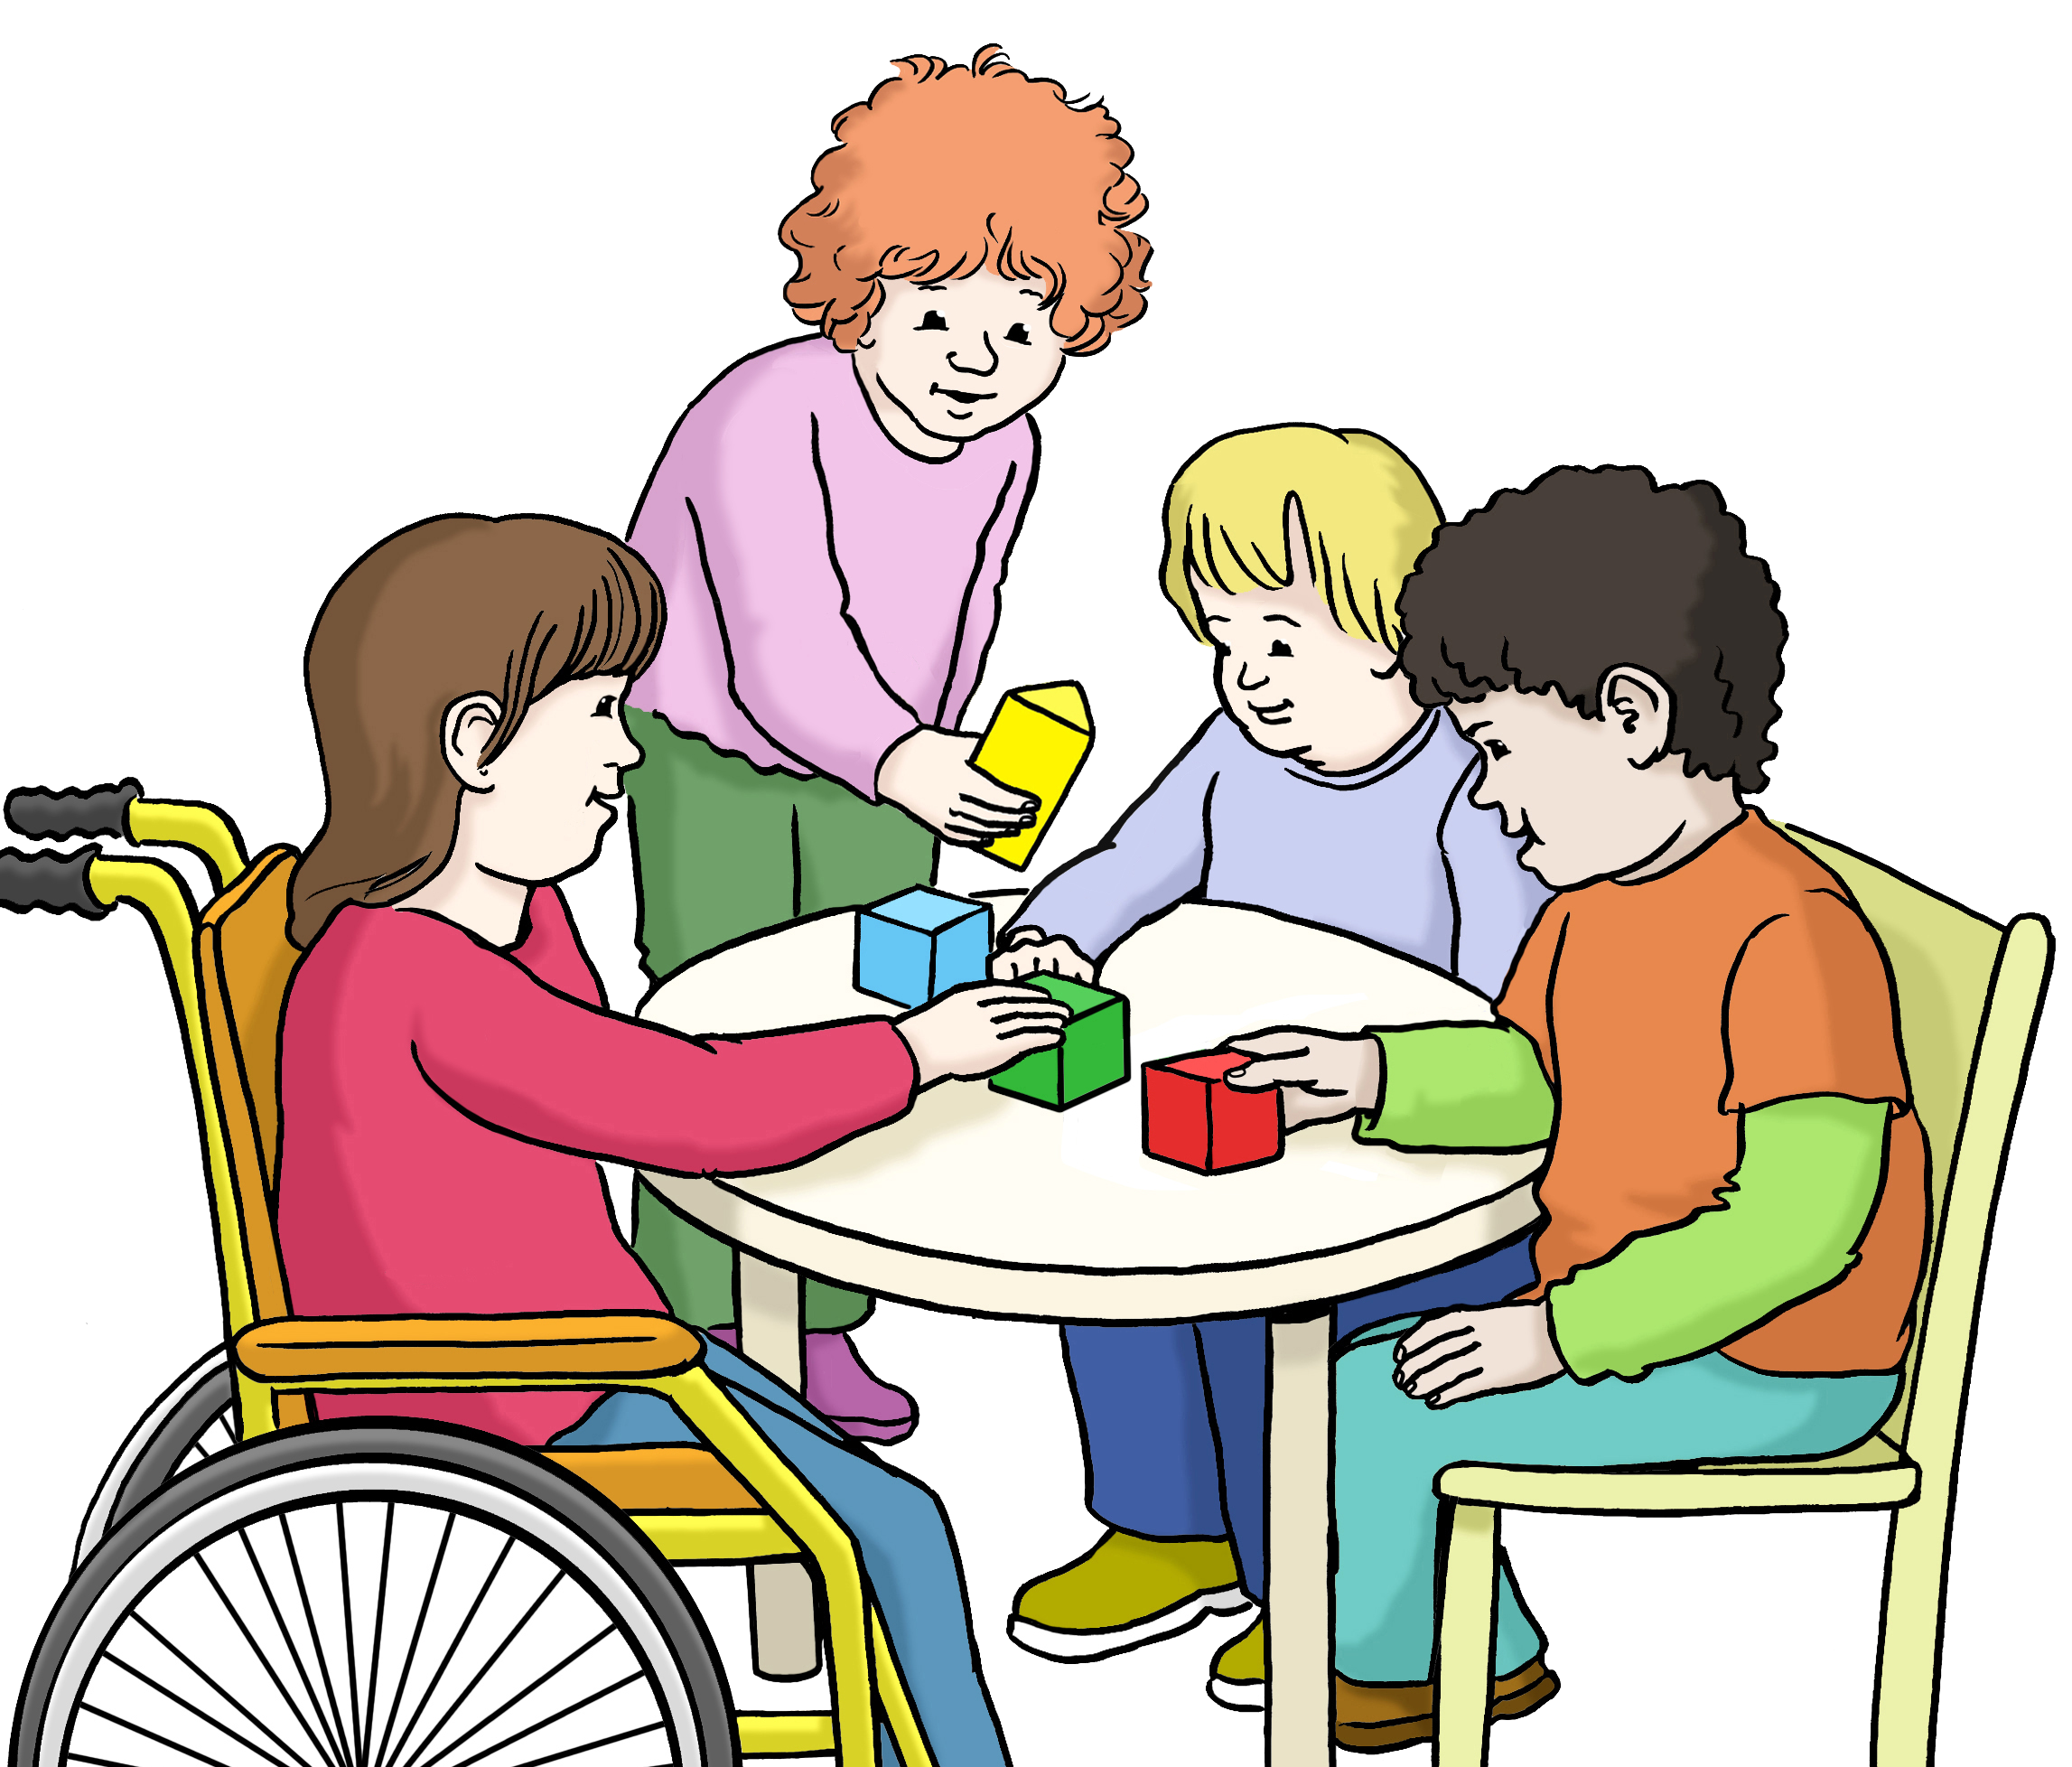 Bildbeschreibung: Vier Kinder sitzen an einem Tisch uns spielen mit Bauklötzen. Ein Kind sitzt im Rollstuhl.